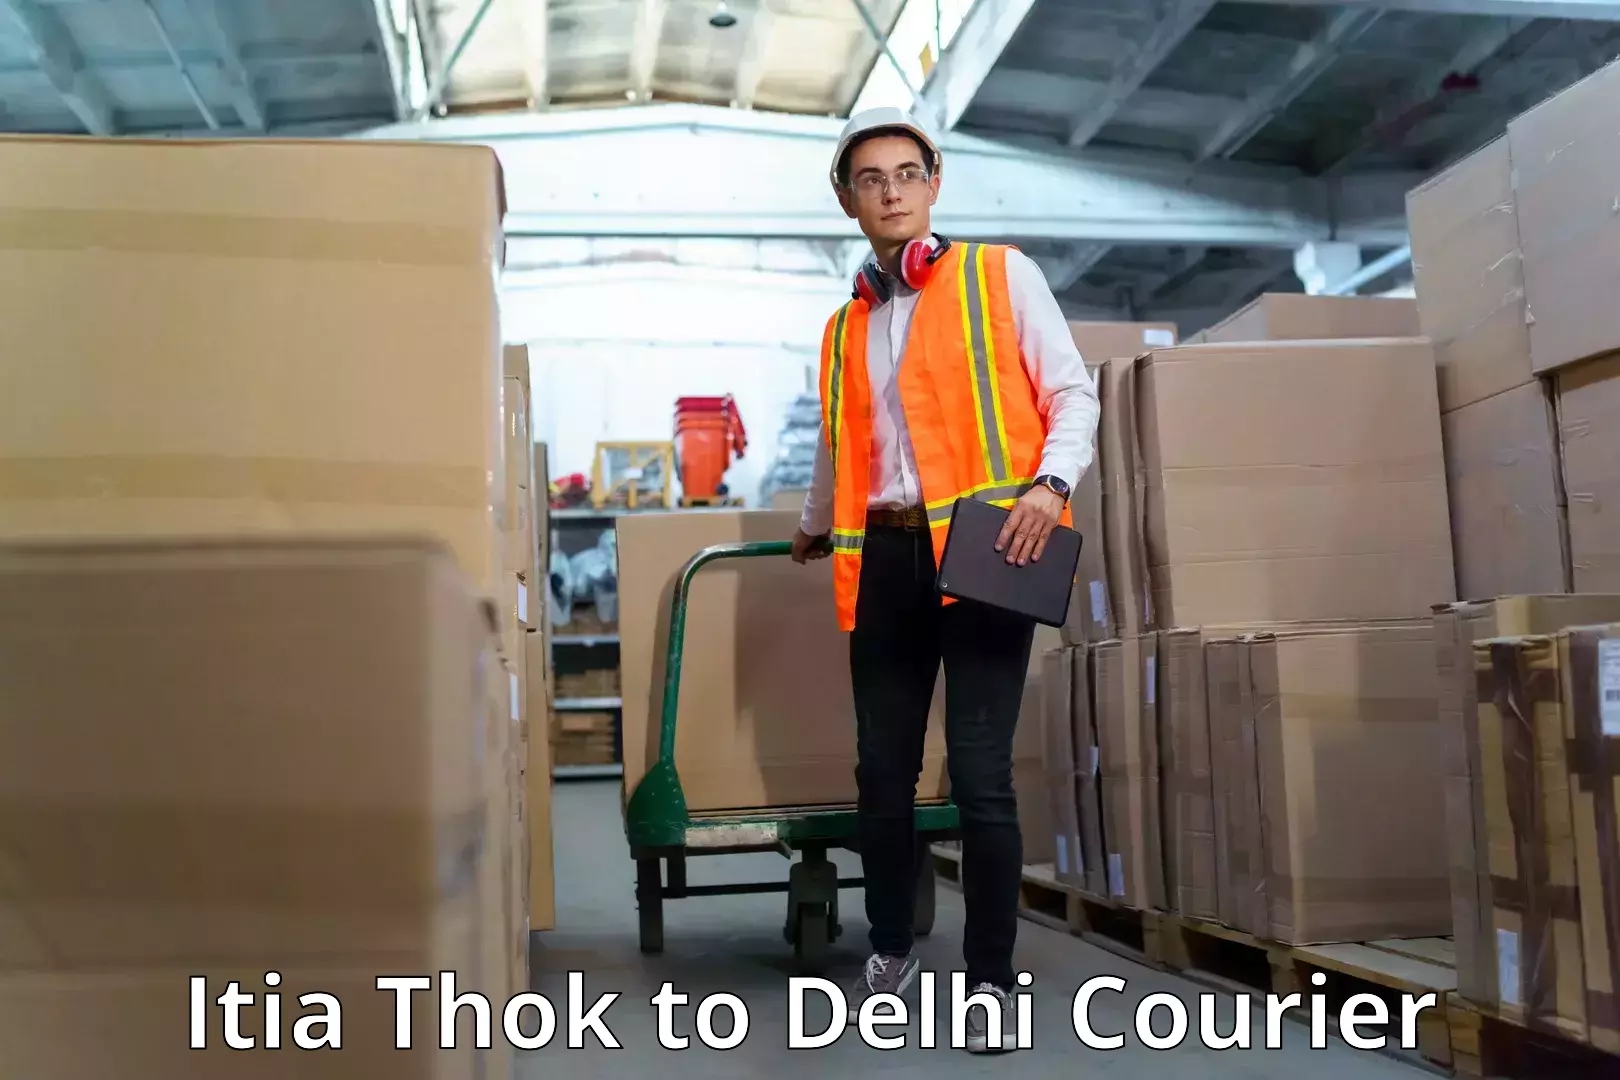 Courier service comparison Itia Thok to Jhilmil